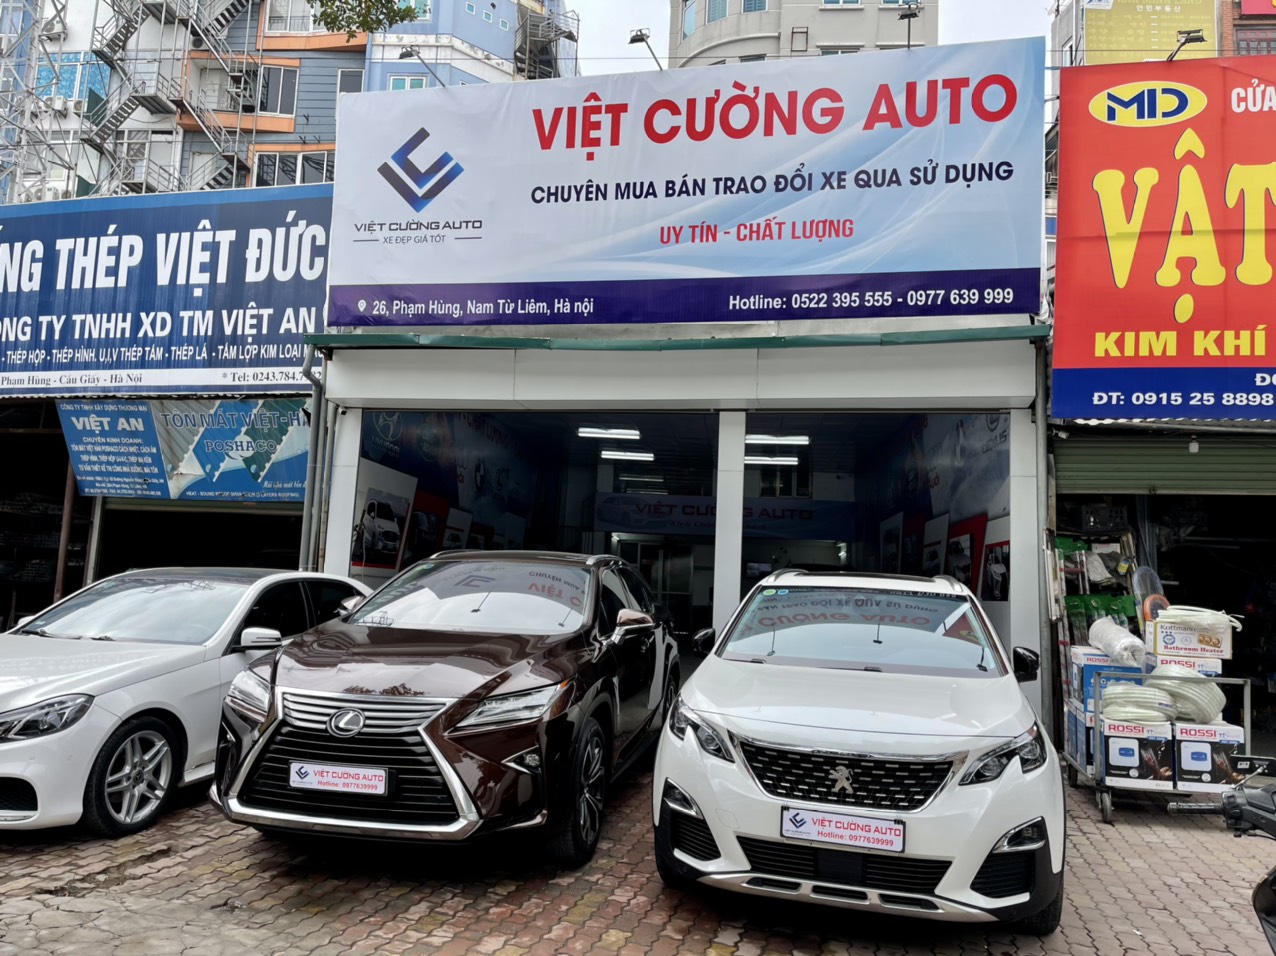 Việt Cường Auto